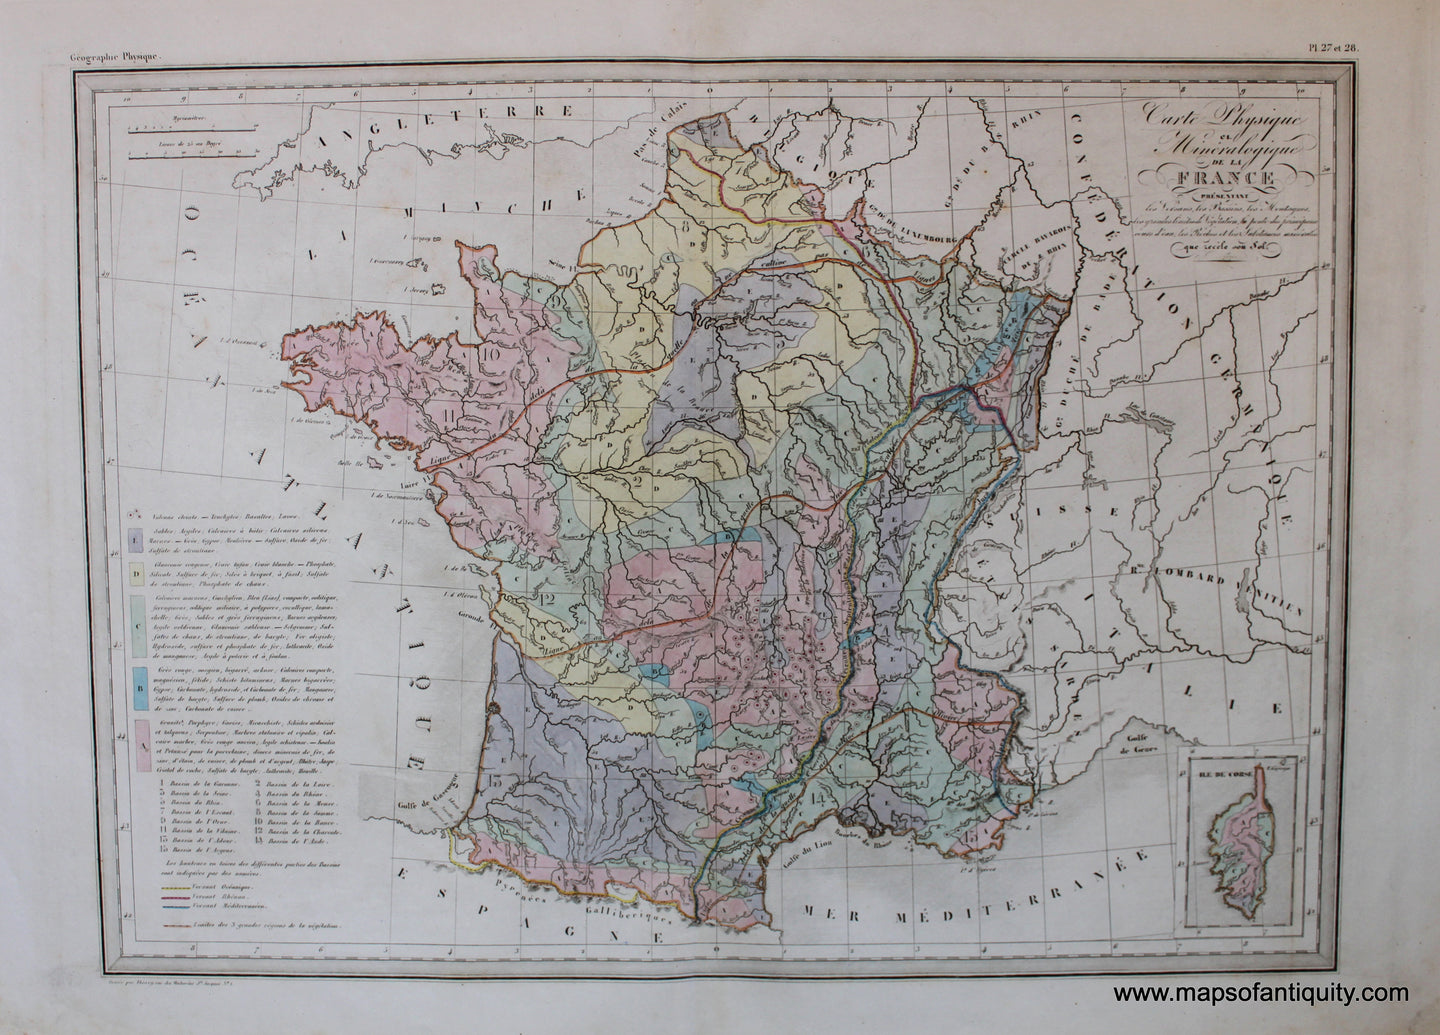 Antique-Hand-Colored-Map-Carte-Physique-et-Mineralogique-de-La-France-Europe-France-1846-M.-Malte-Brun-Maps-Of-Antiquity